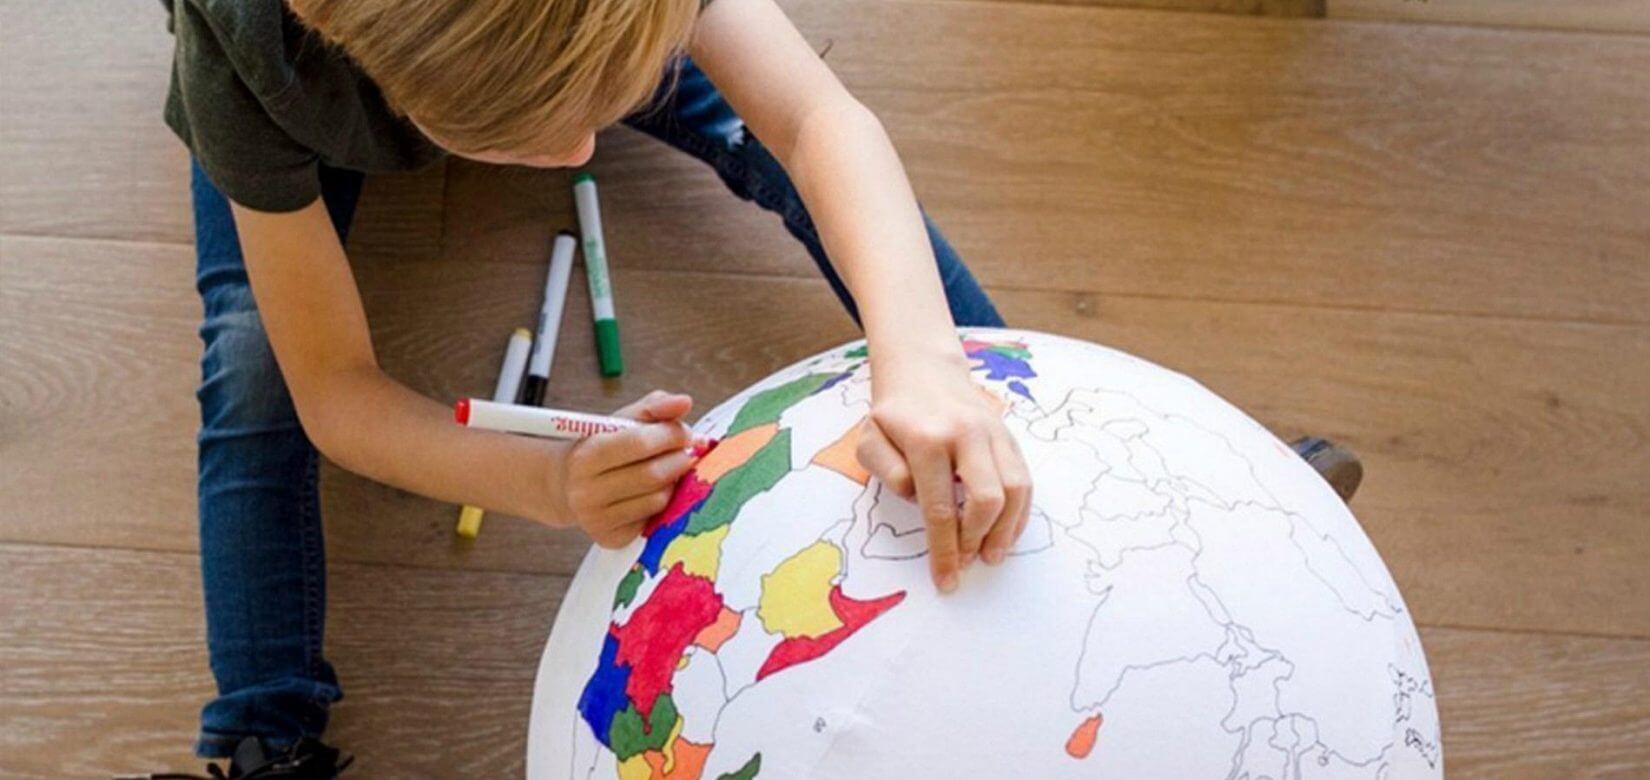 5 τρόποι για να γνωρίσουν τα παιδιά σας διαφορετικές κουλτούρες!